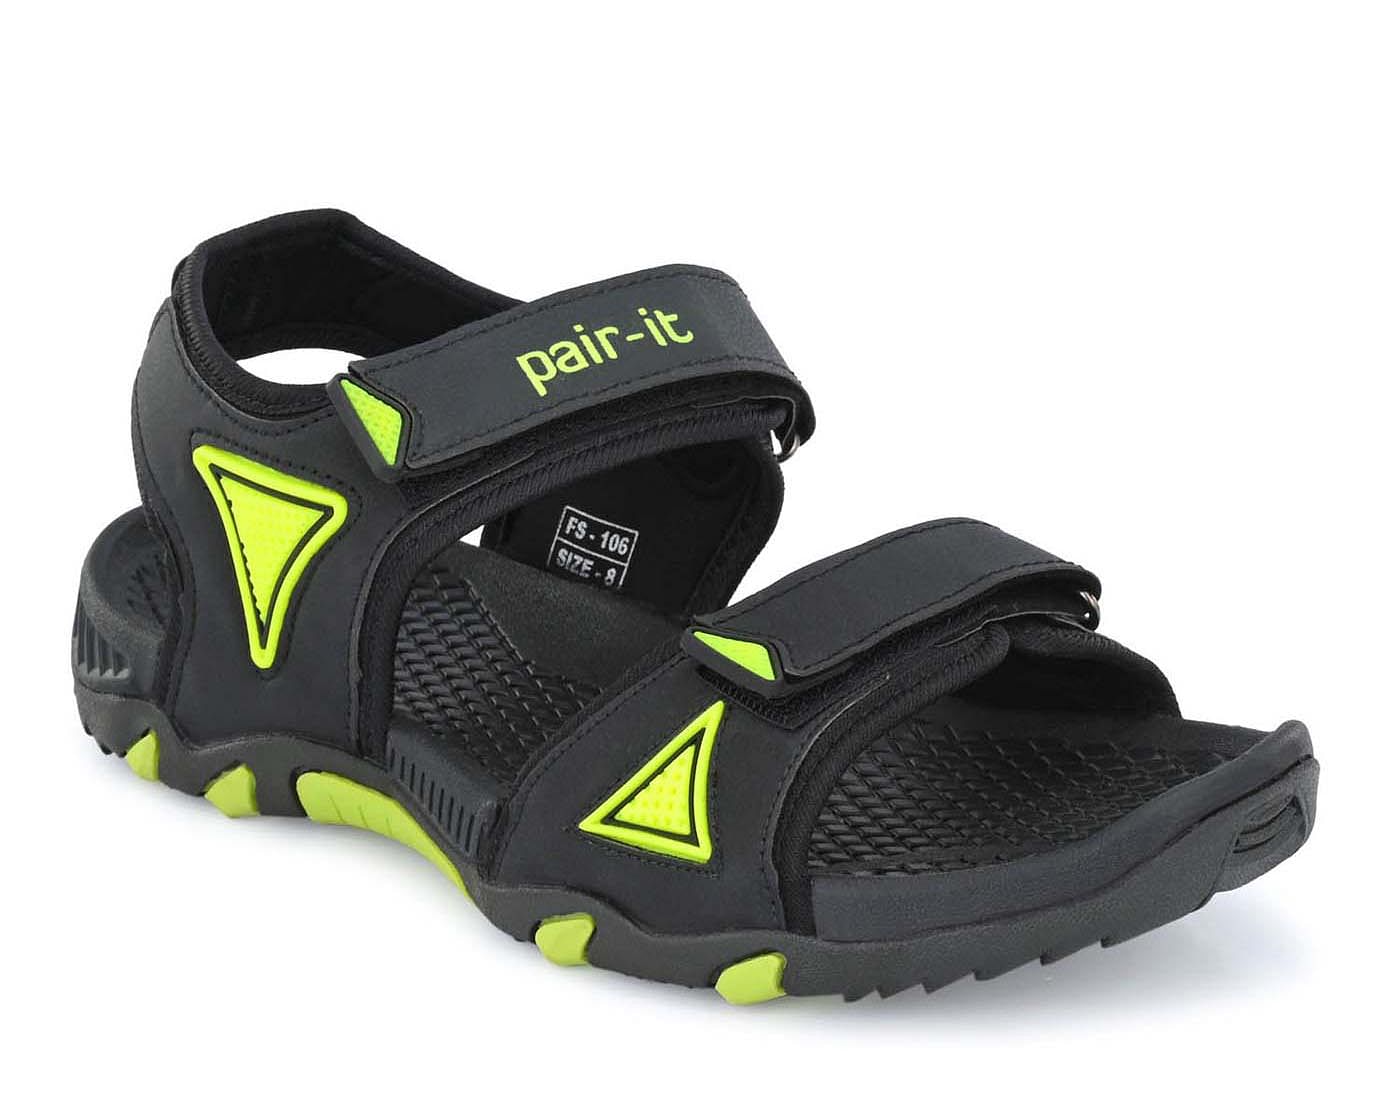 Pair-it Mn Sandals - Black/P.Green-UN-Mn-Sp-Sandal007